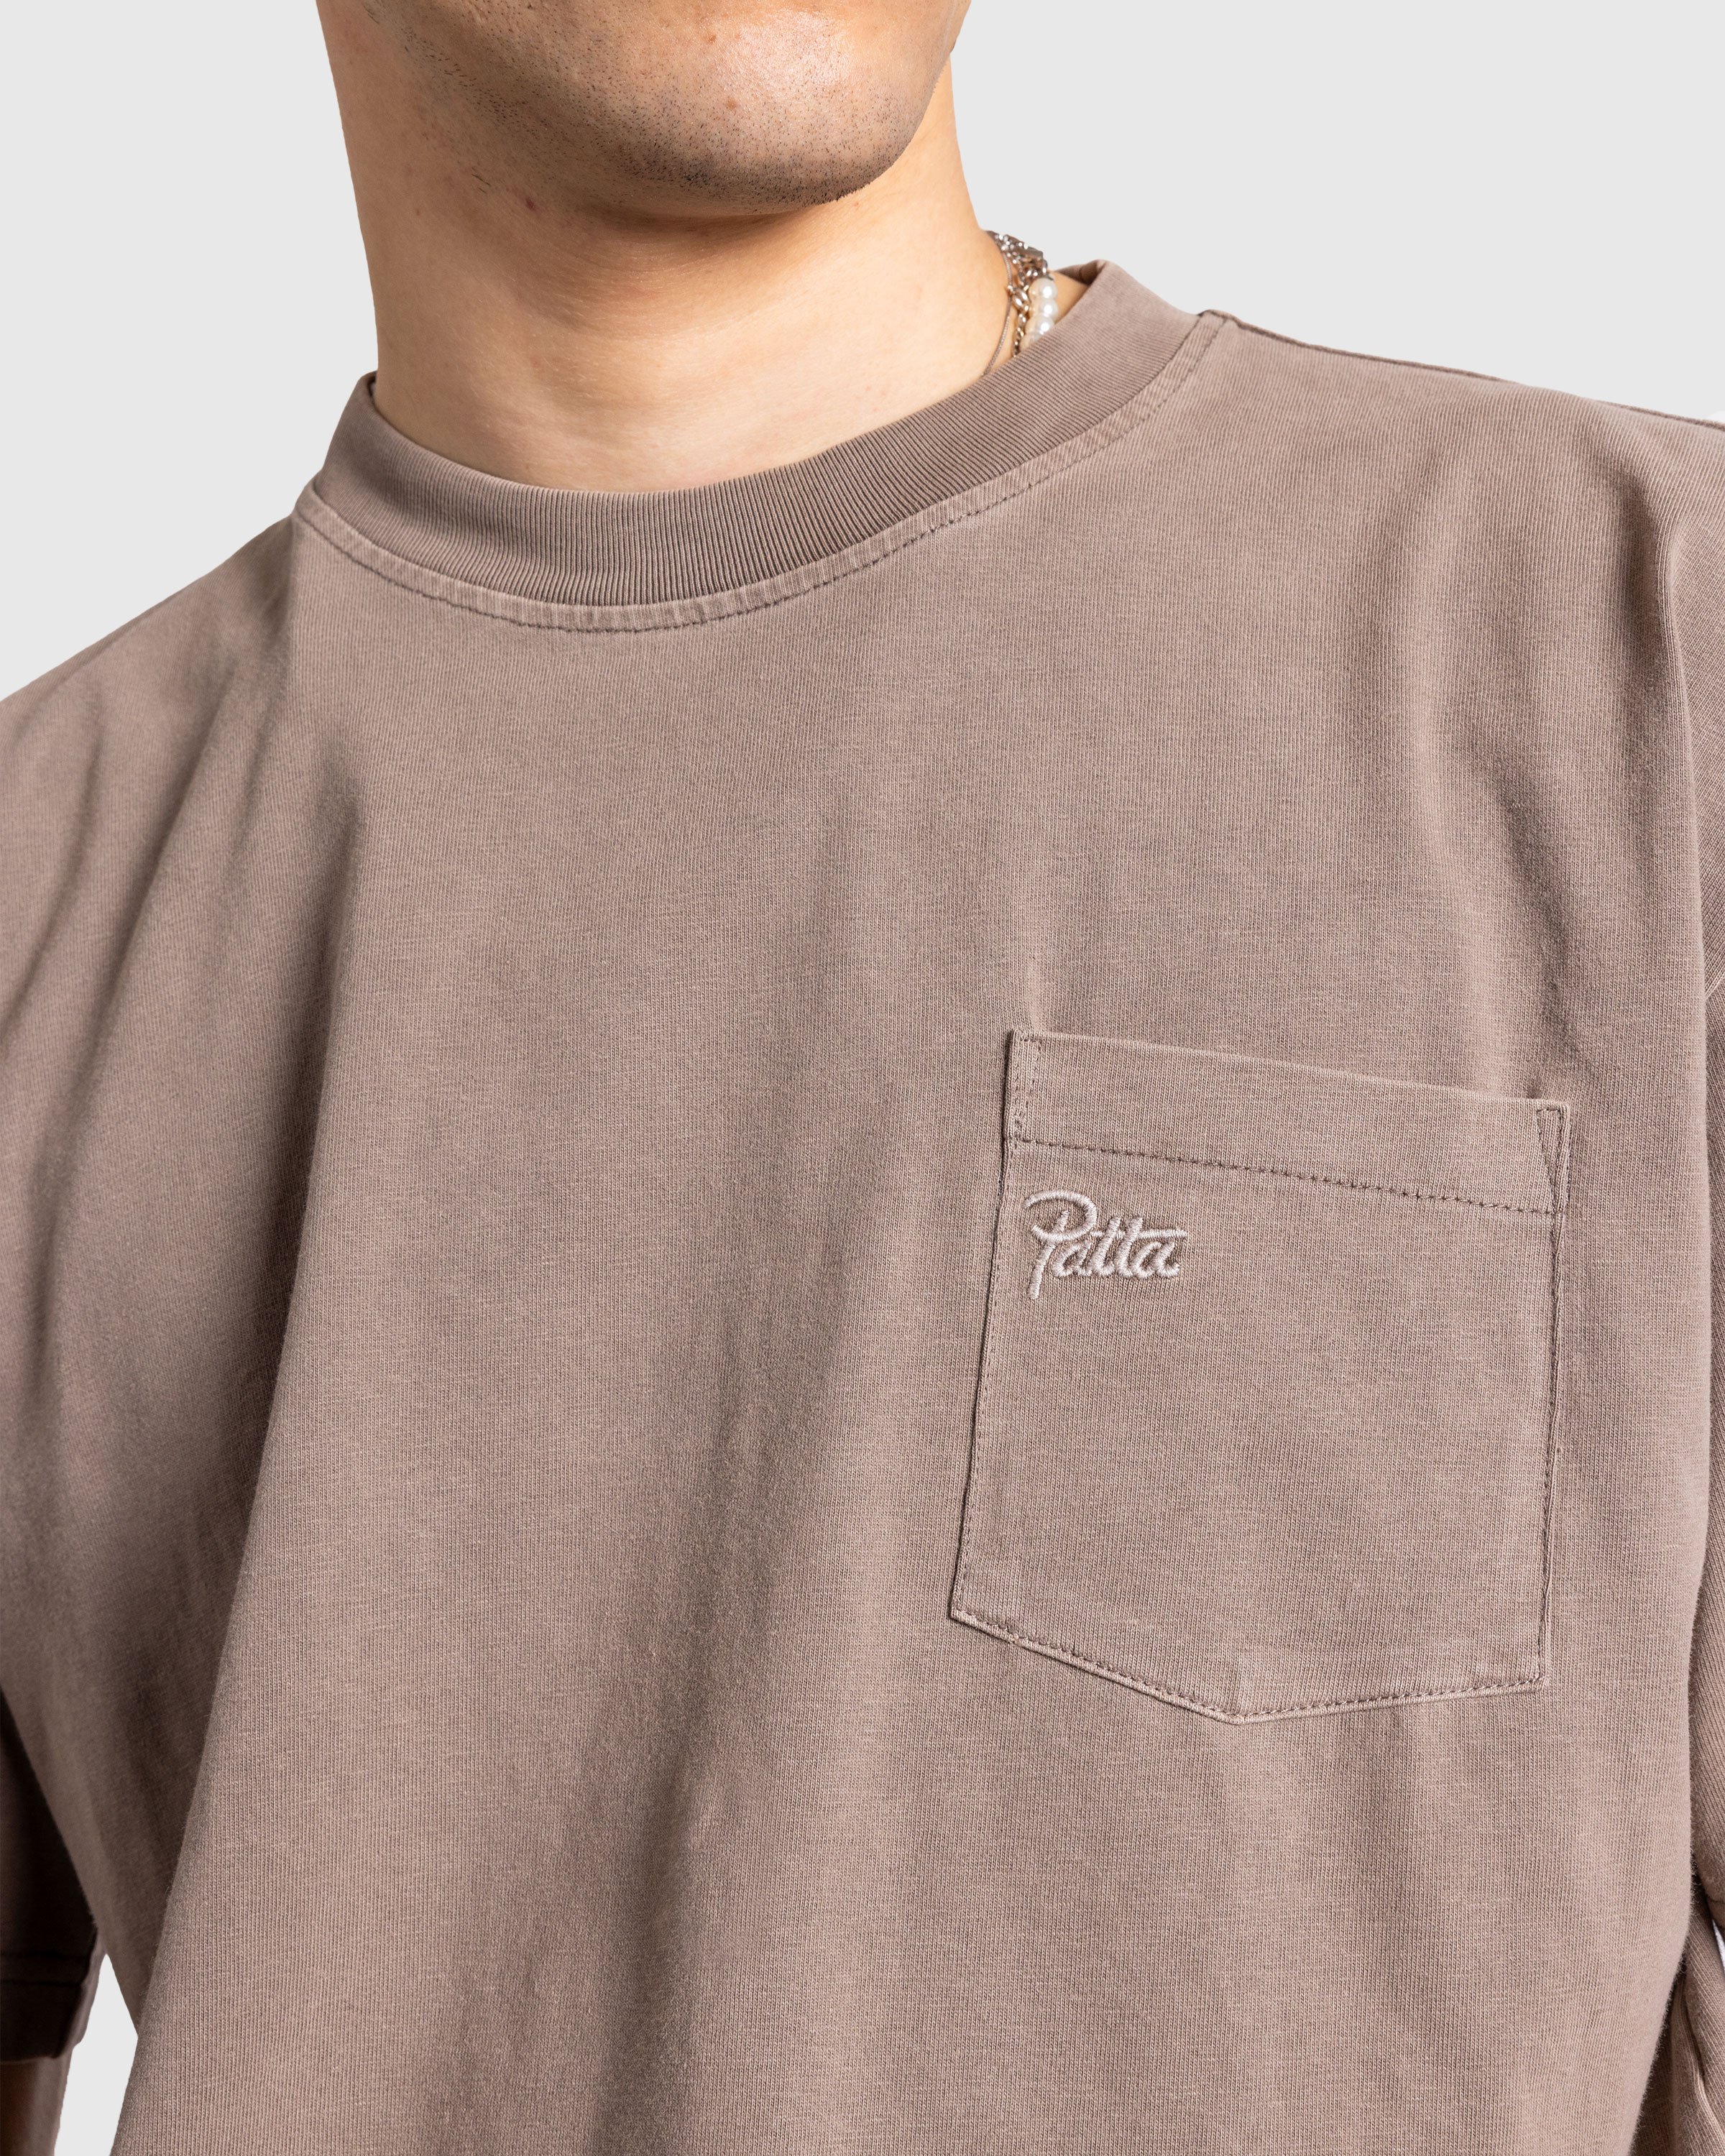 Patta - Basic Pocket T-Shirt Driftwood - Clothing - Grey - Image 5